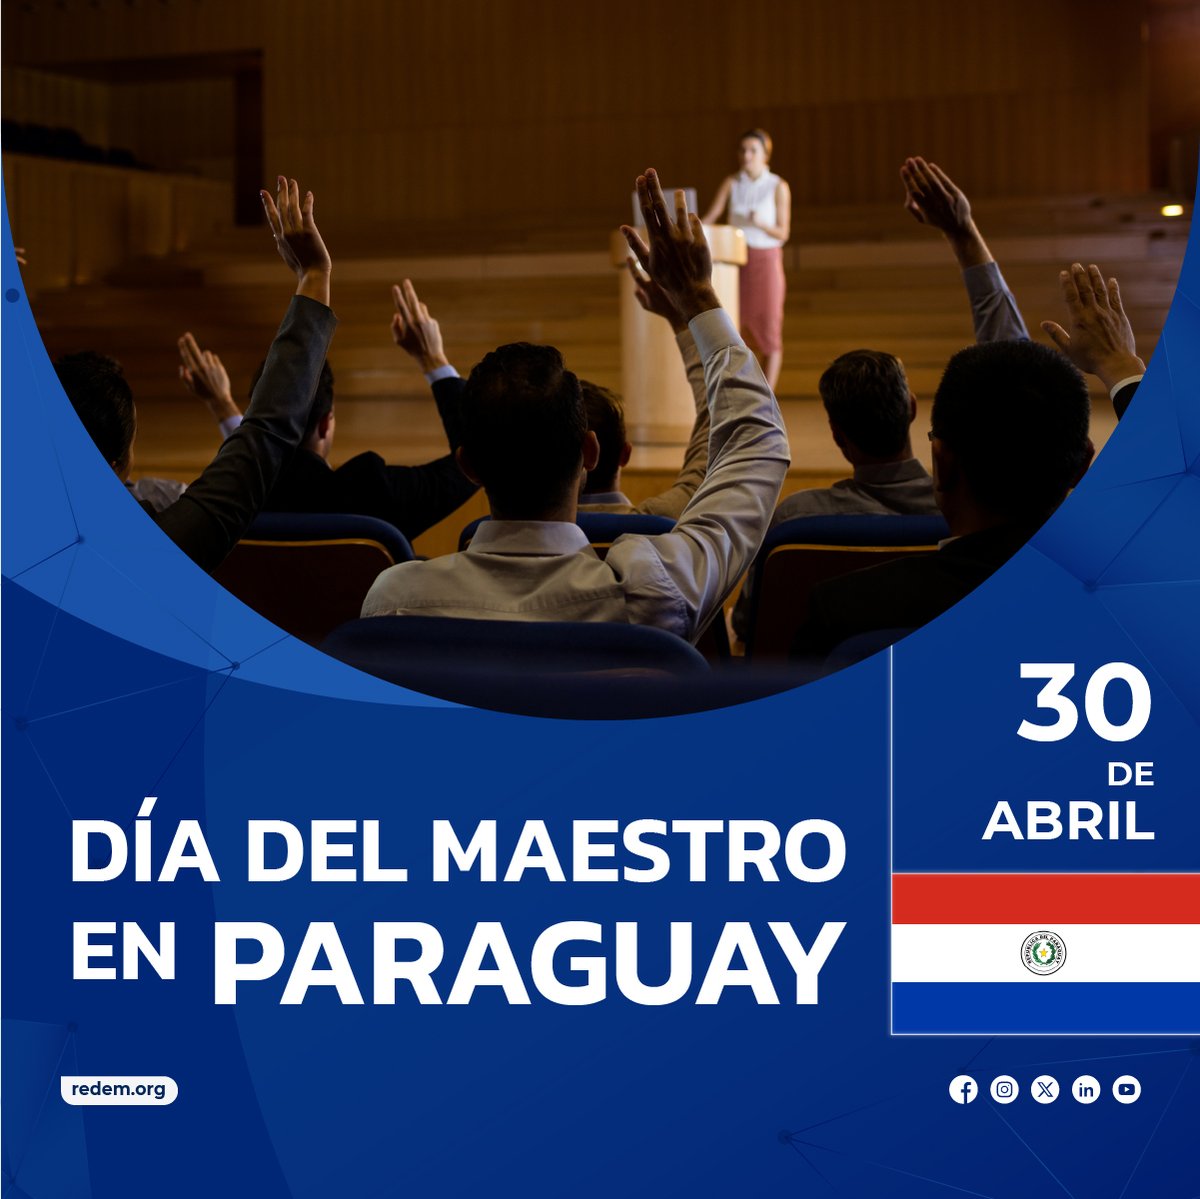 ¡Nuestro homenaje a las maestras y a los maestros de Paraguay!
👉 redem.org/30-de-abril-di…
#diadelmaestro #paraguay #educación #docentes